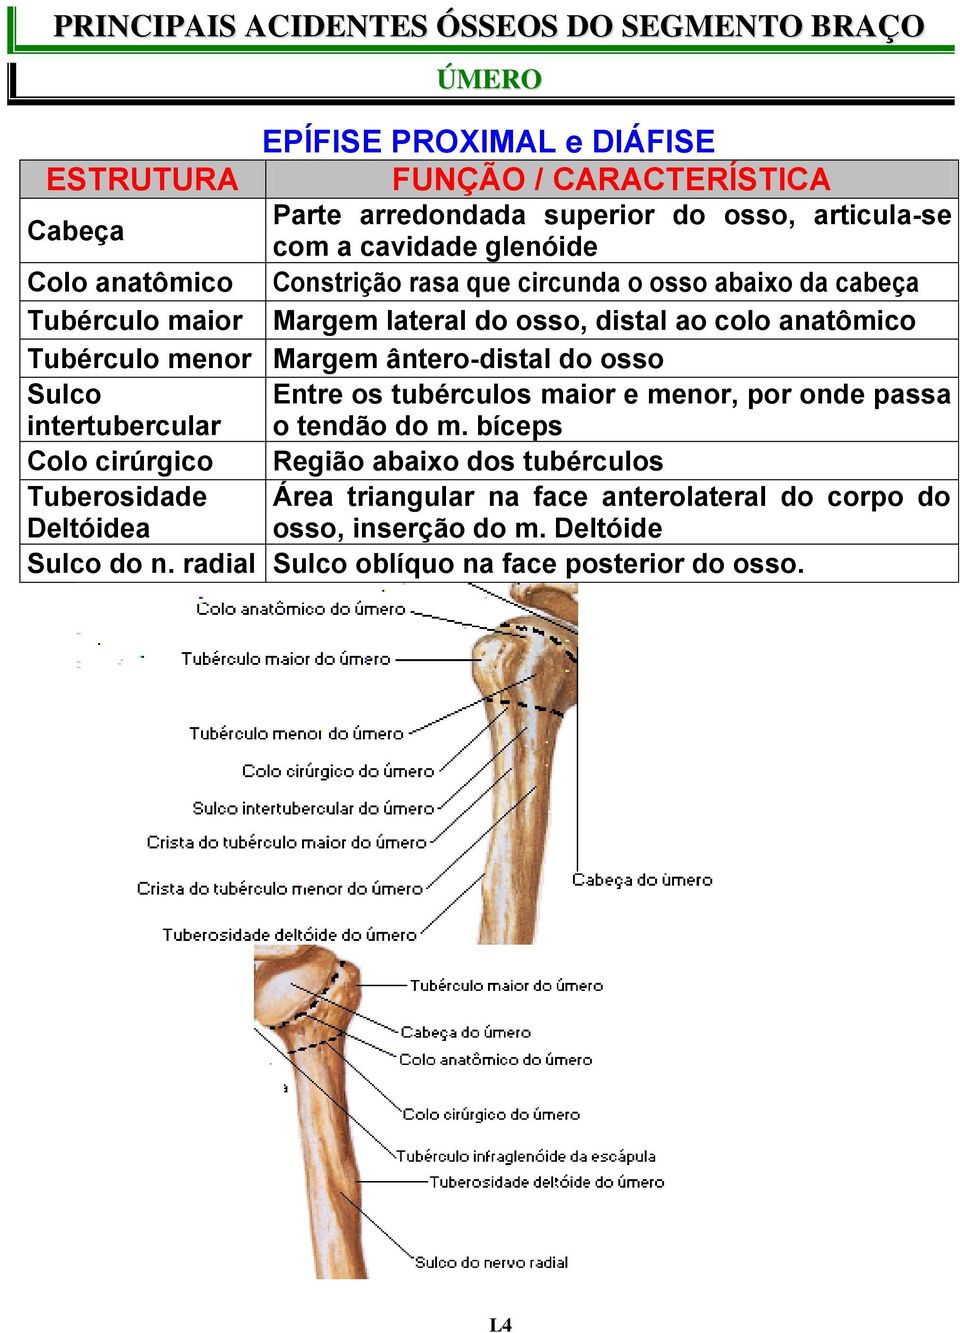 menor Margem ântero-distal do osso Sulco Entre os tubérculos maior e menor, por onde passa intertubercular o tendão do m.